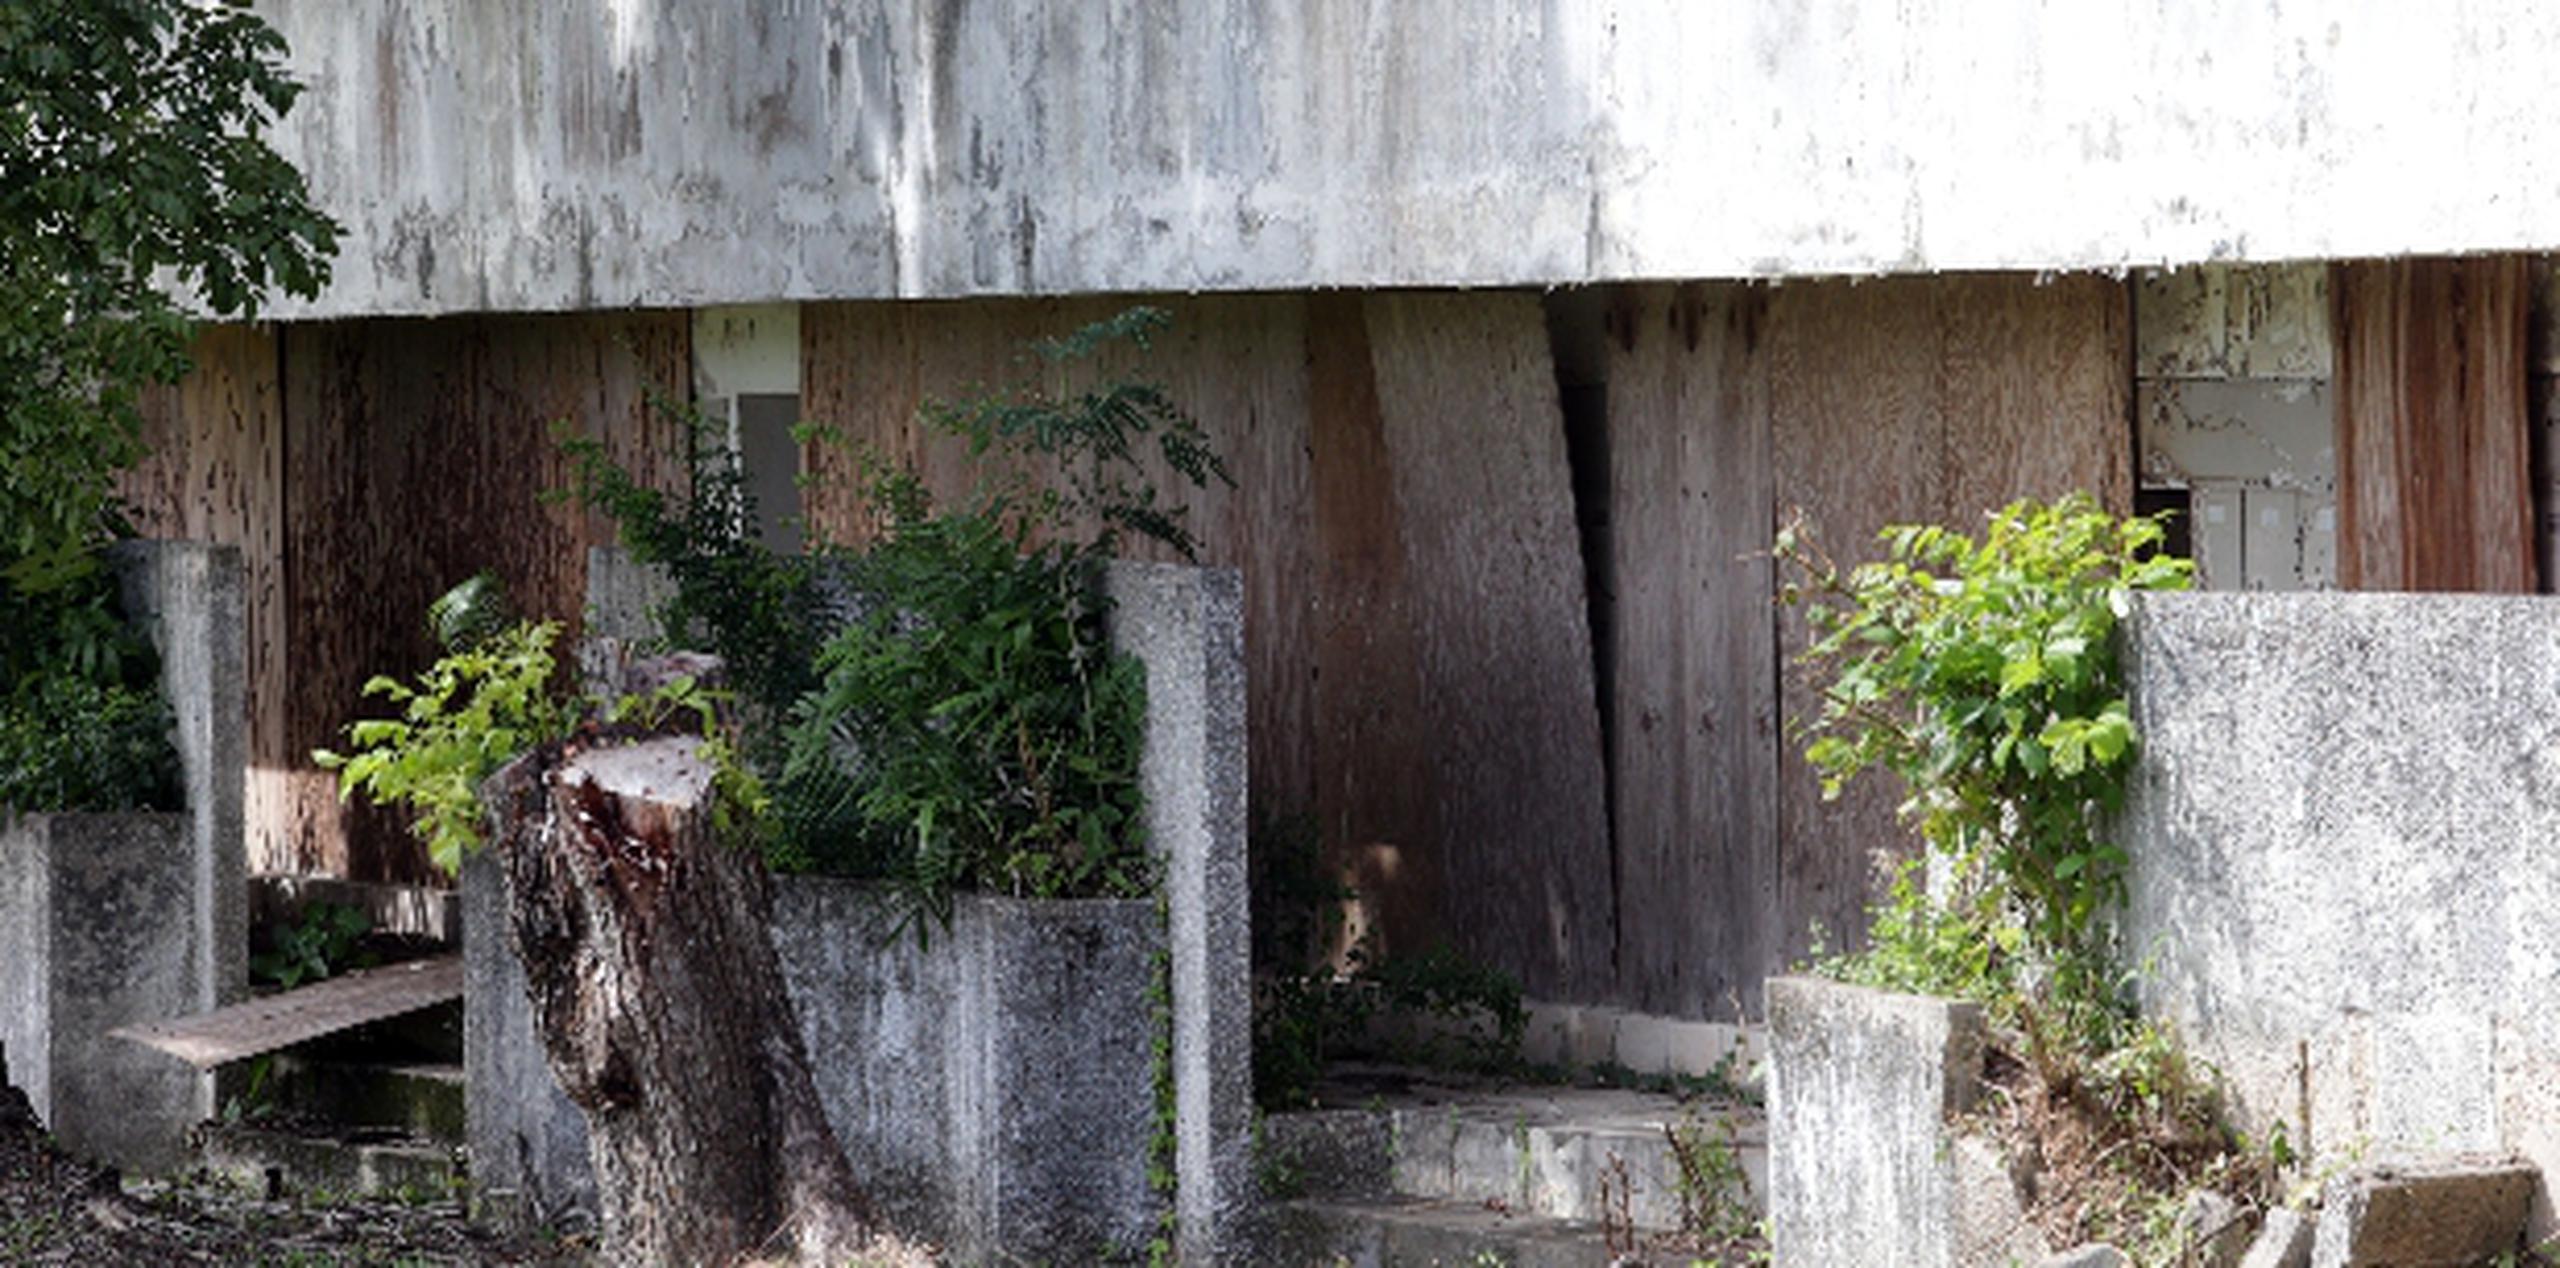 En el cementerio, el área conocida como el osario está en total abandono y, supuestamente, contiene asbesto. (mariel.mejia@gfrmedia.com )